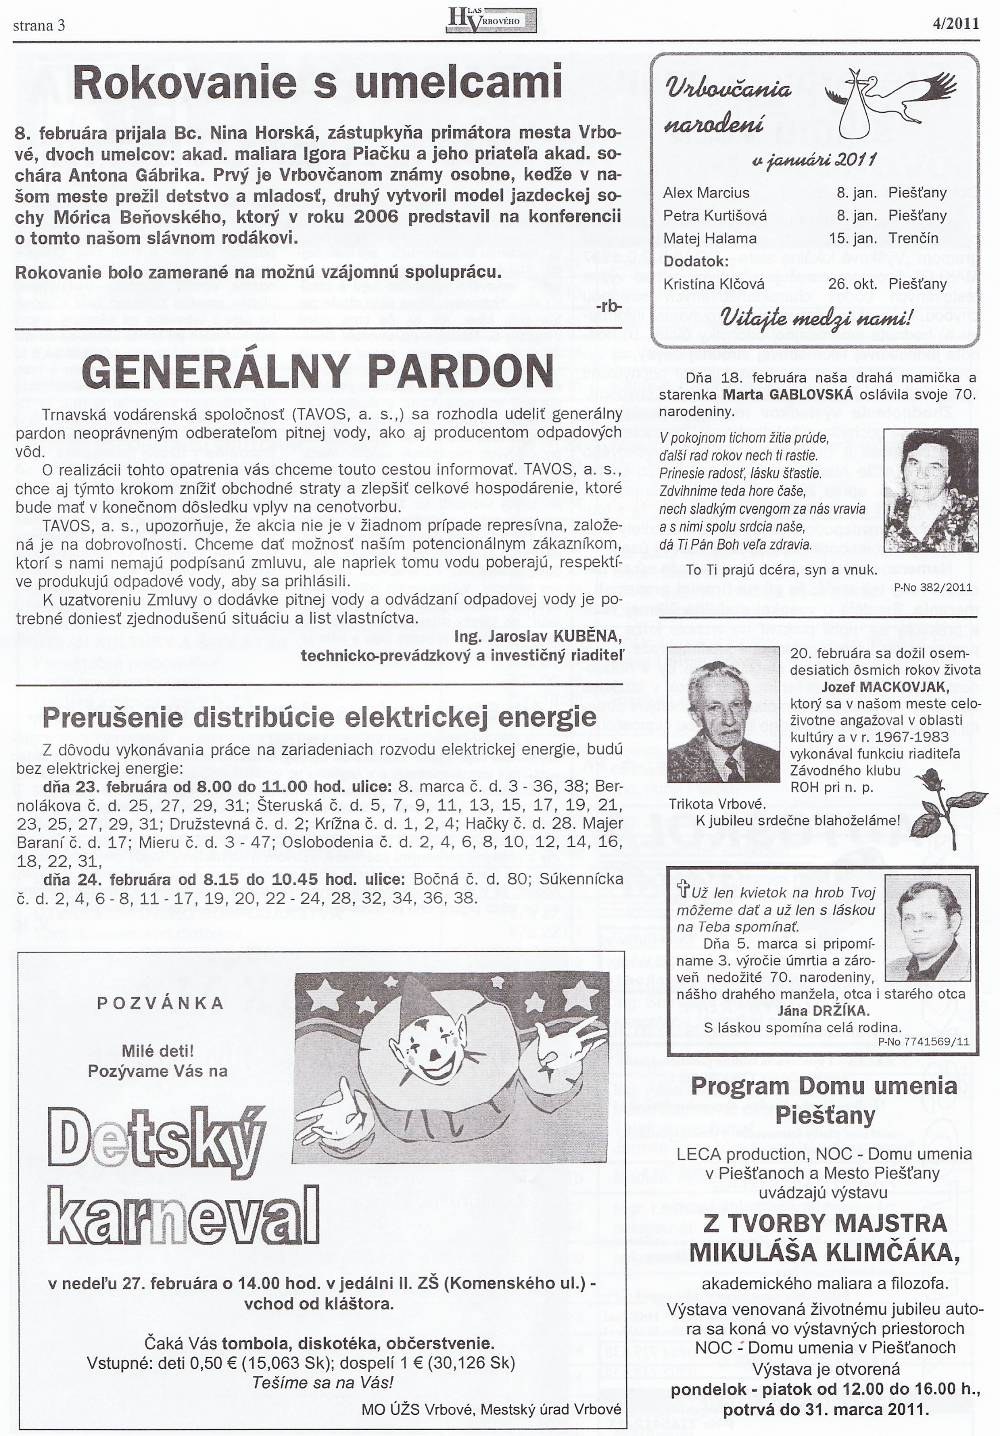 Hlas Vrbového 02/2011, strana 3